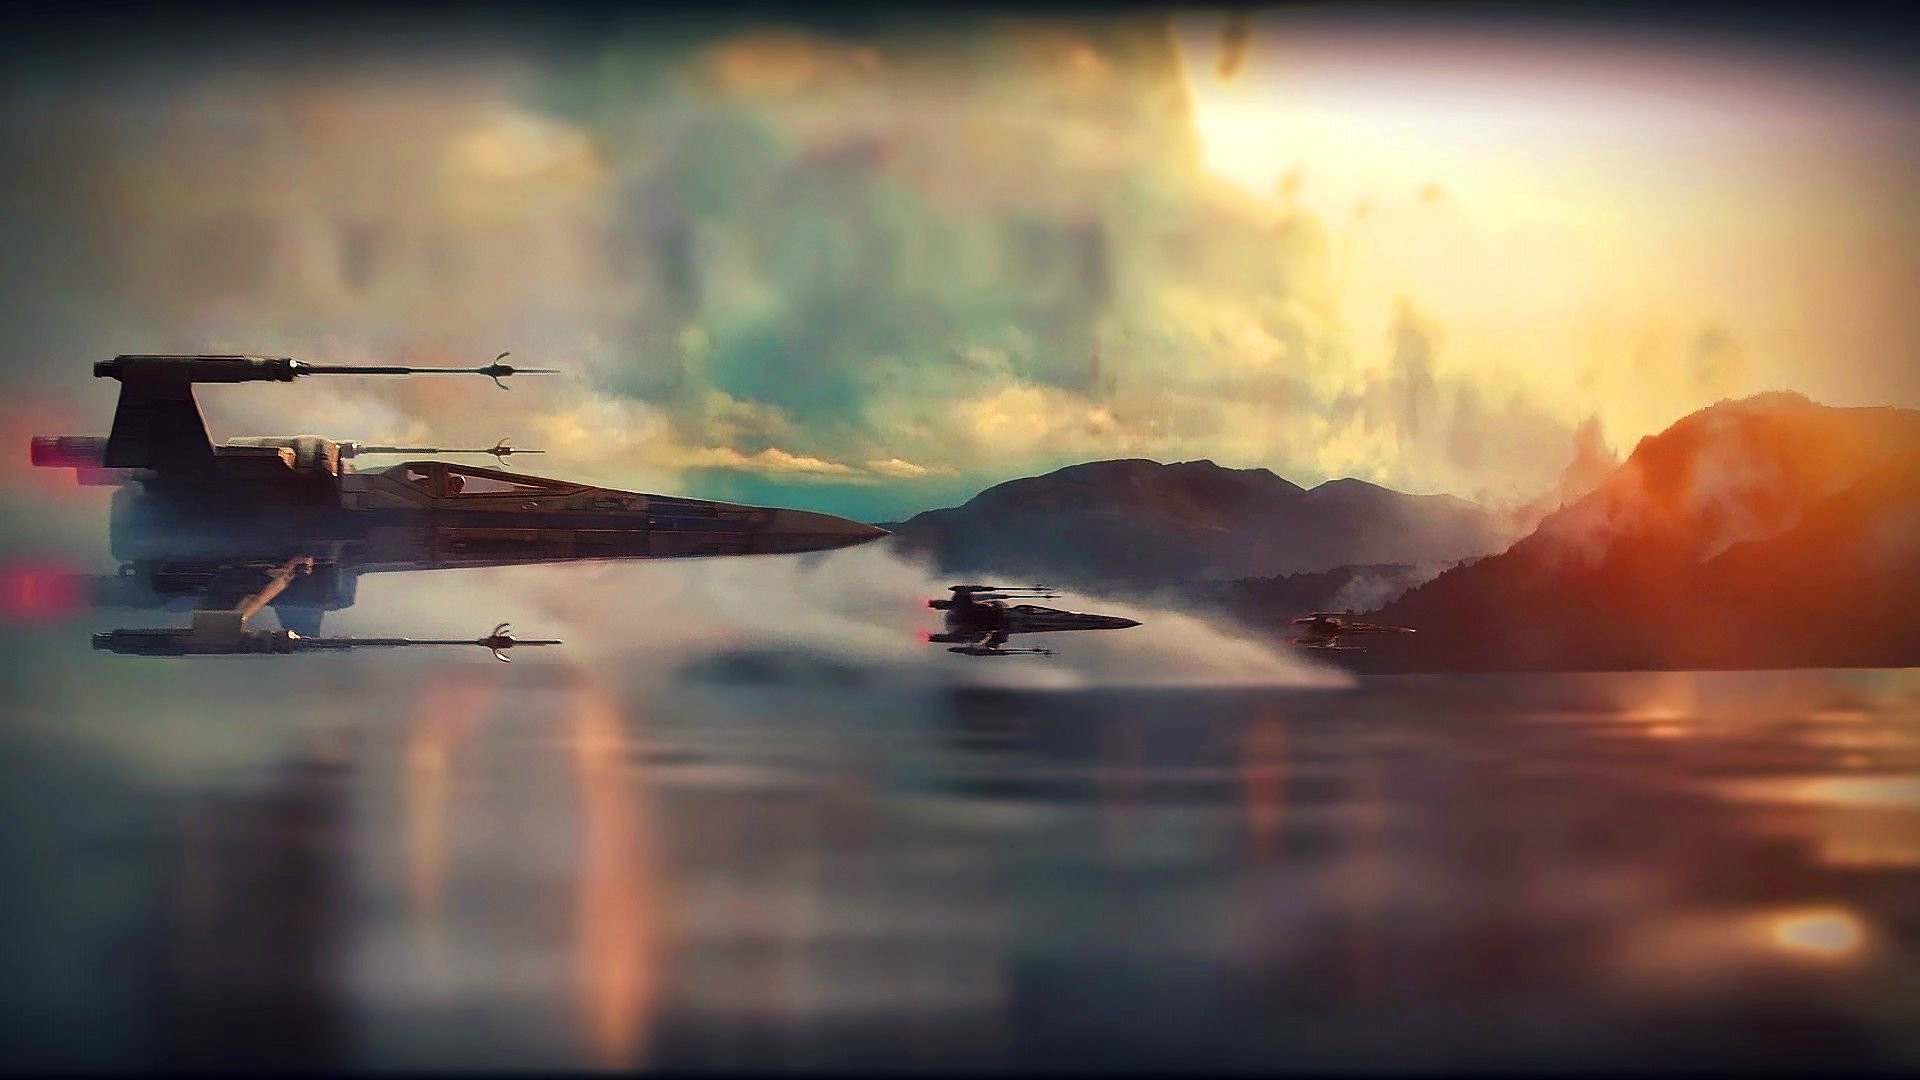 Star Wars Episode 7 Desktop Backgrounds